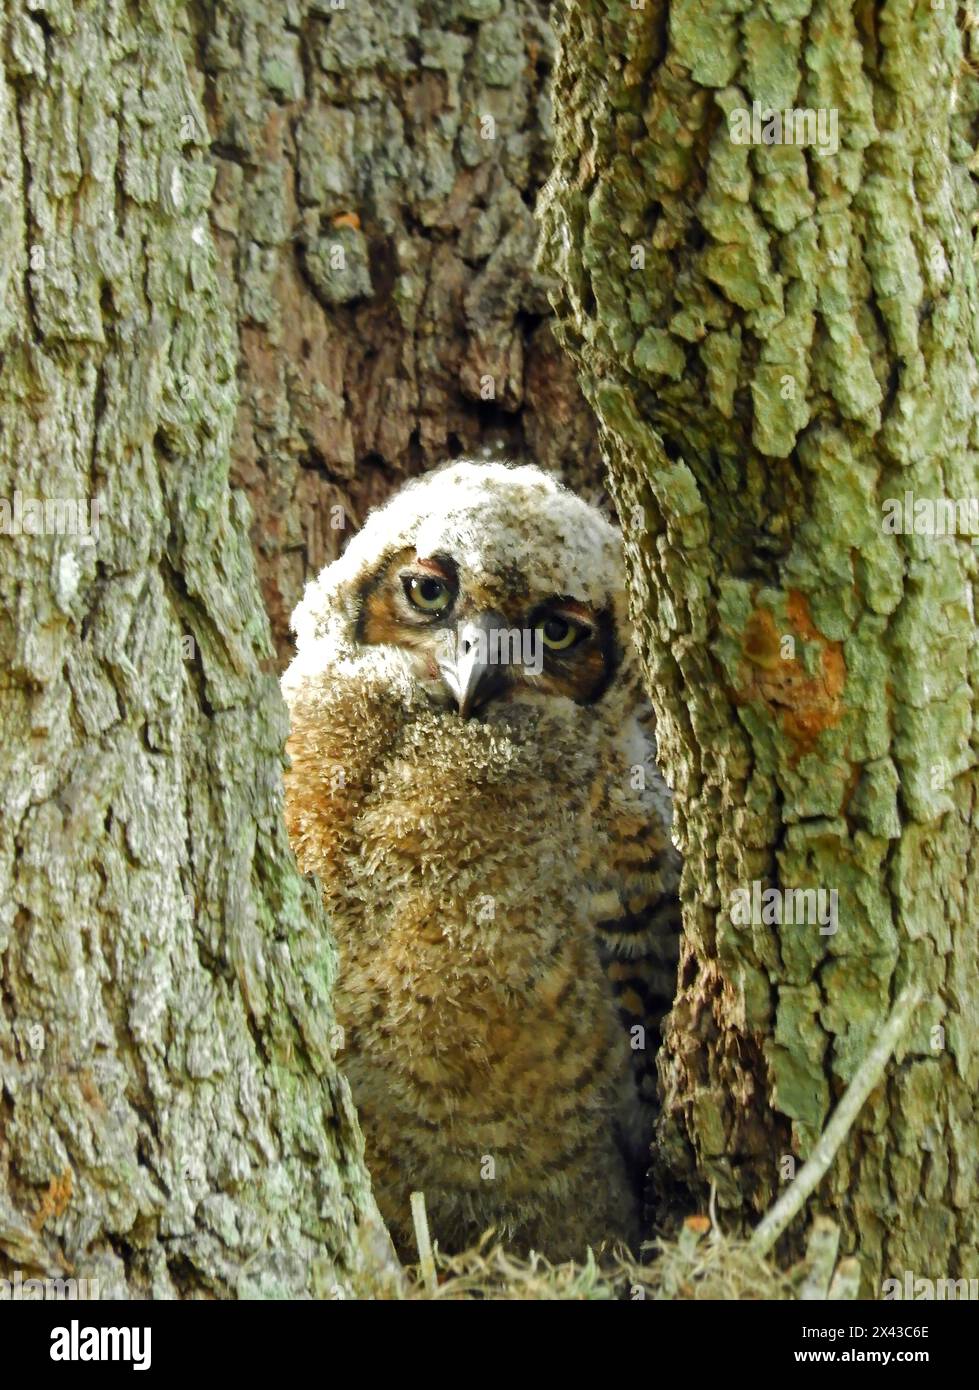 aa mignonne grande chouette cornée attendant que sa mère retourne au nid dans un creux d'arbre dans le parc d'état brazos bend, près du lac jackson, texas Banque D'Images